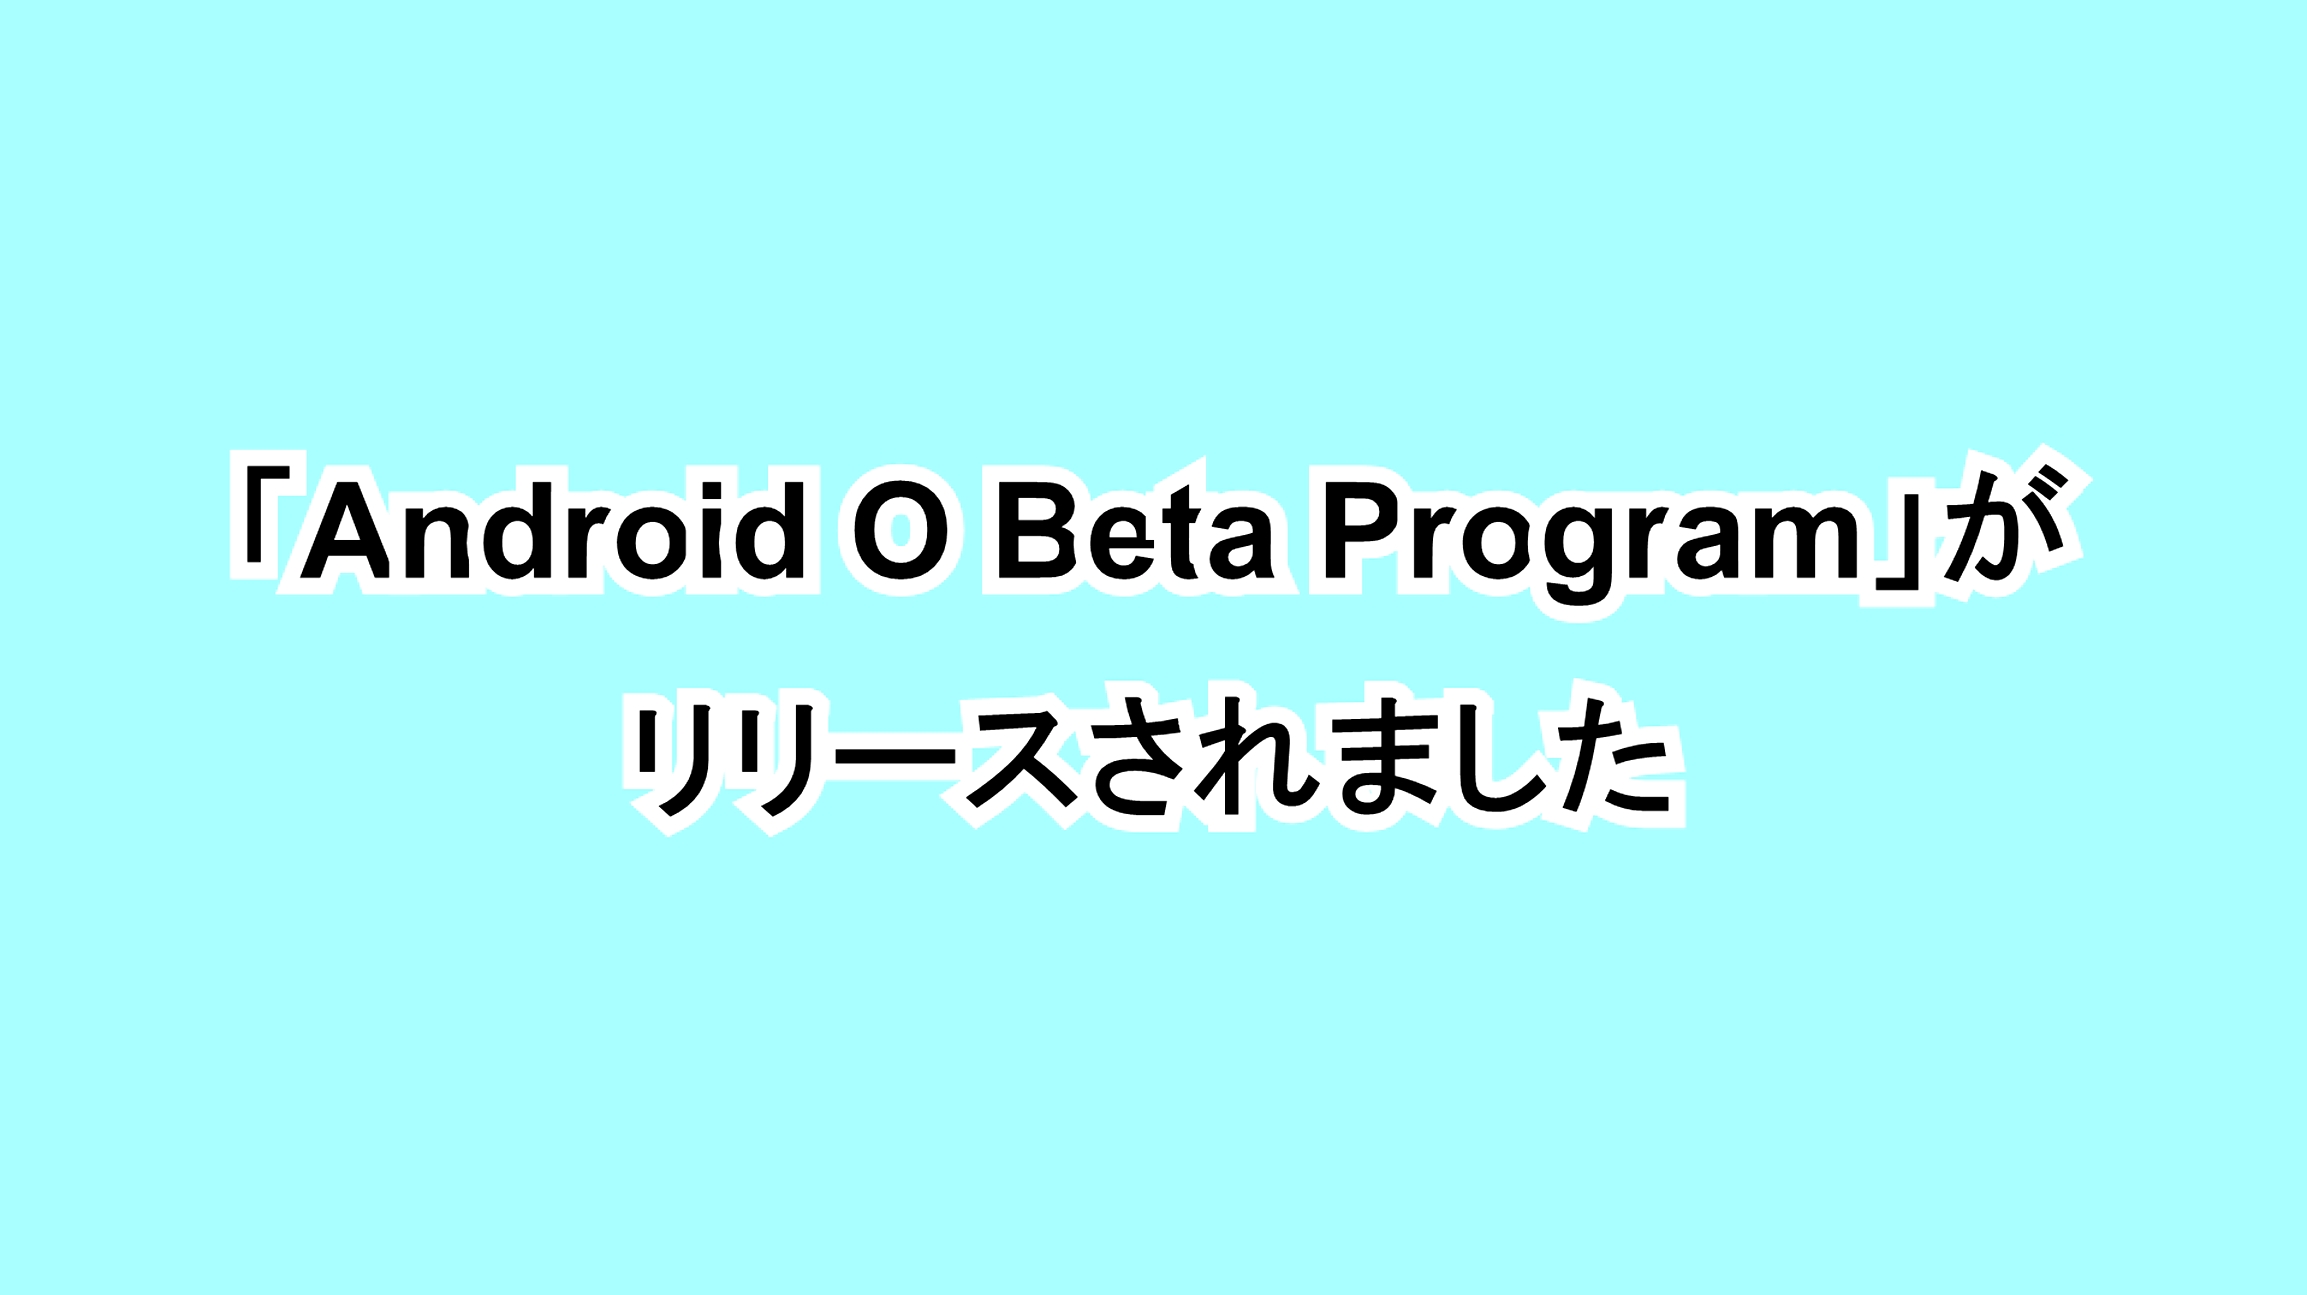 「Android O Beta Program」がリリースされました